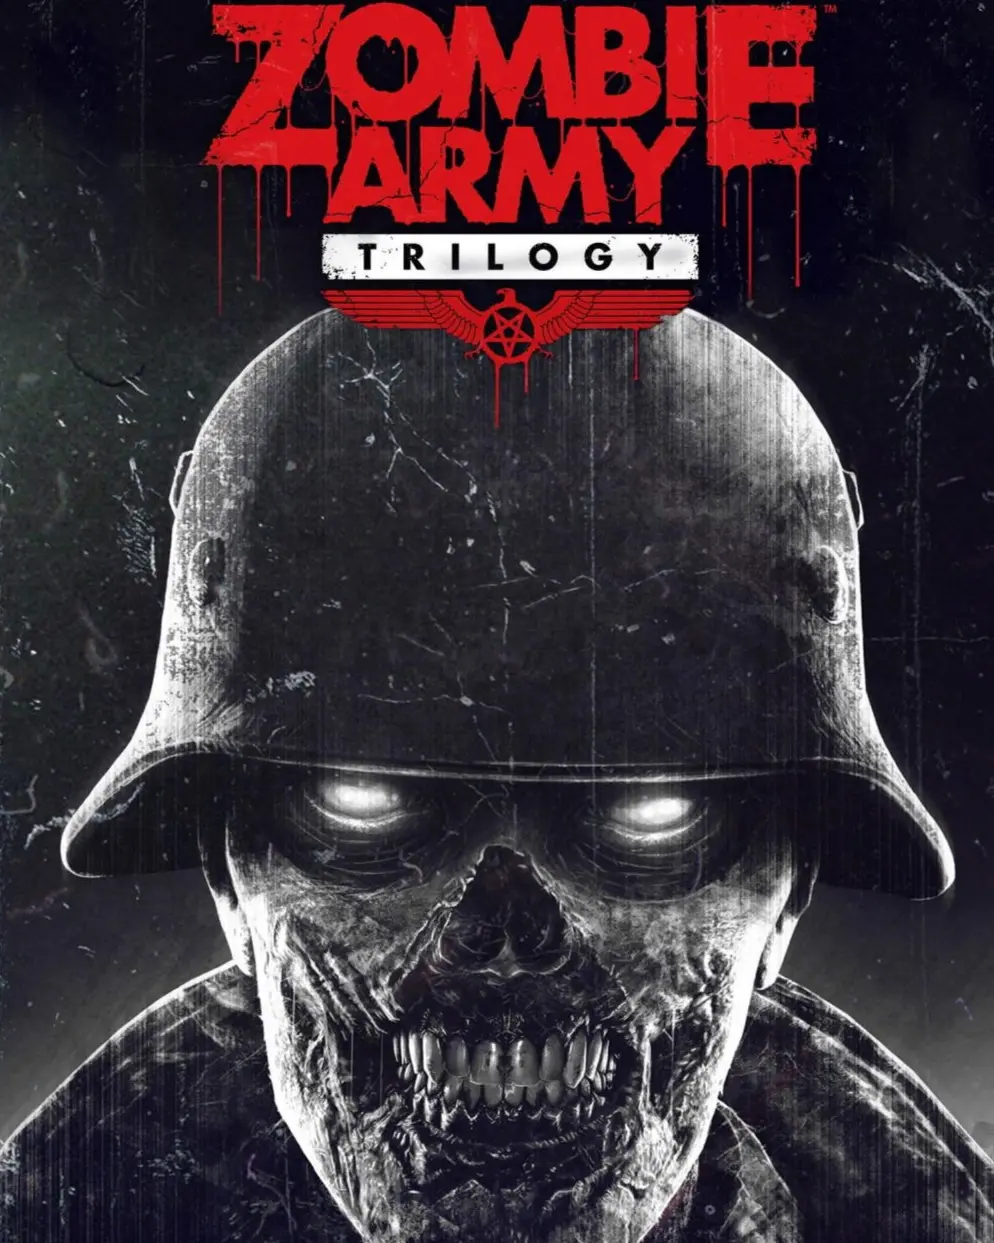 Zombie Army Trilogy (AR) (Xbox One / Xbox Series X|S) - Xbox Live - Digital Code